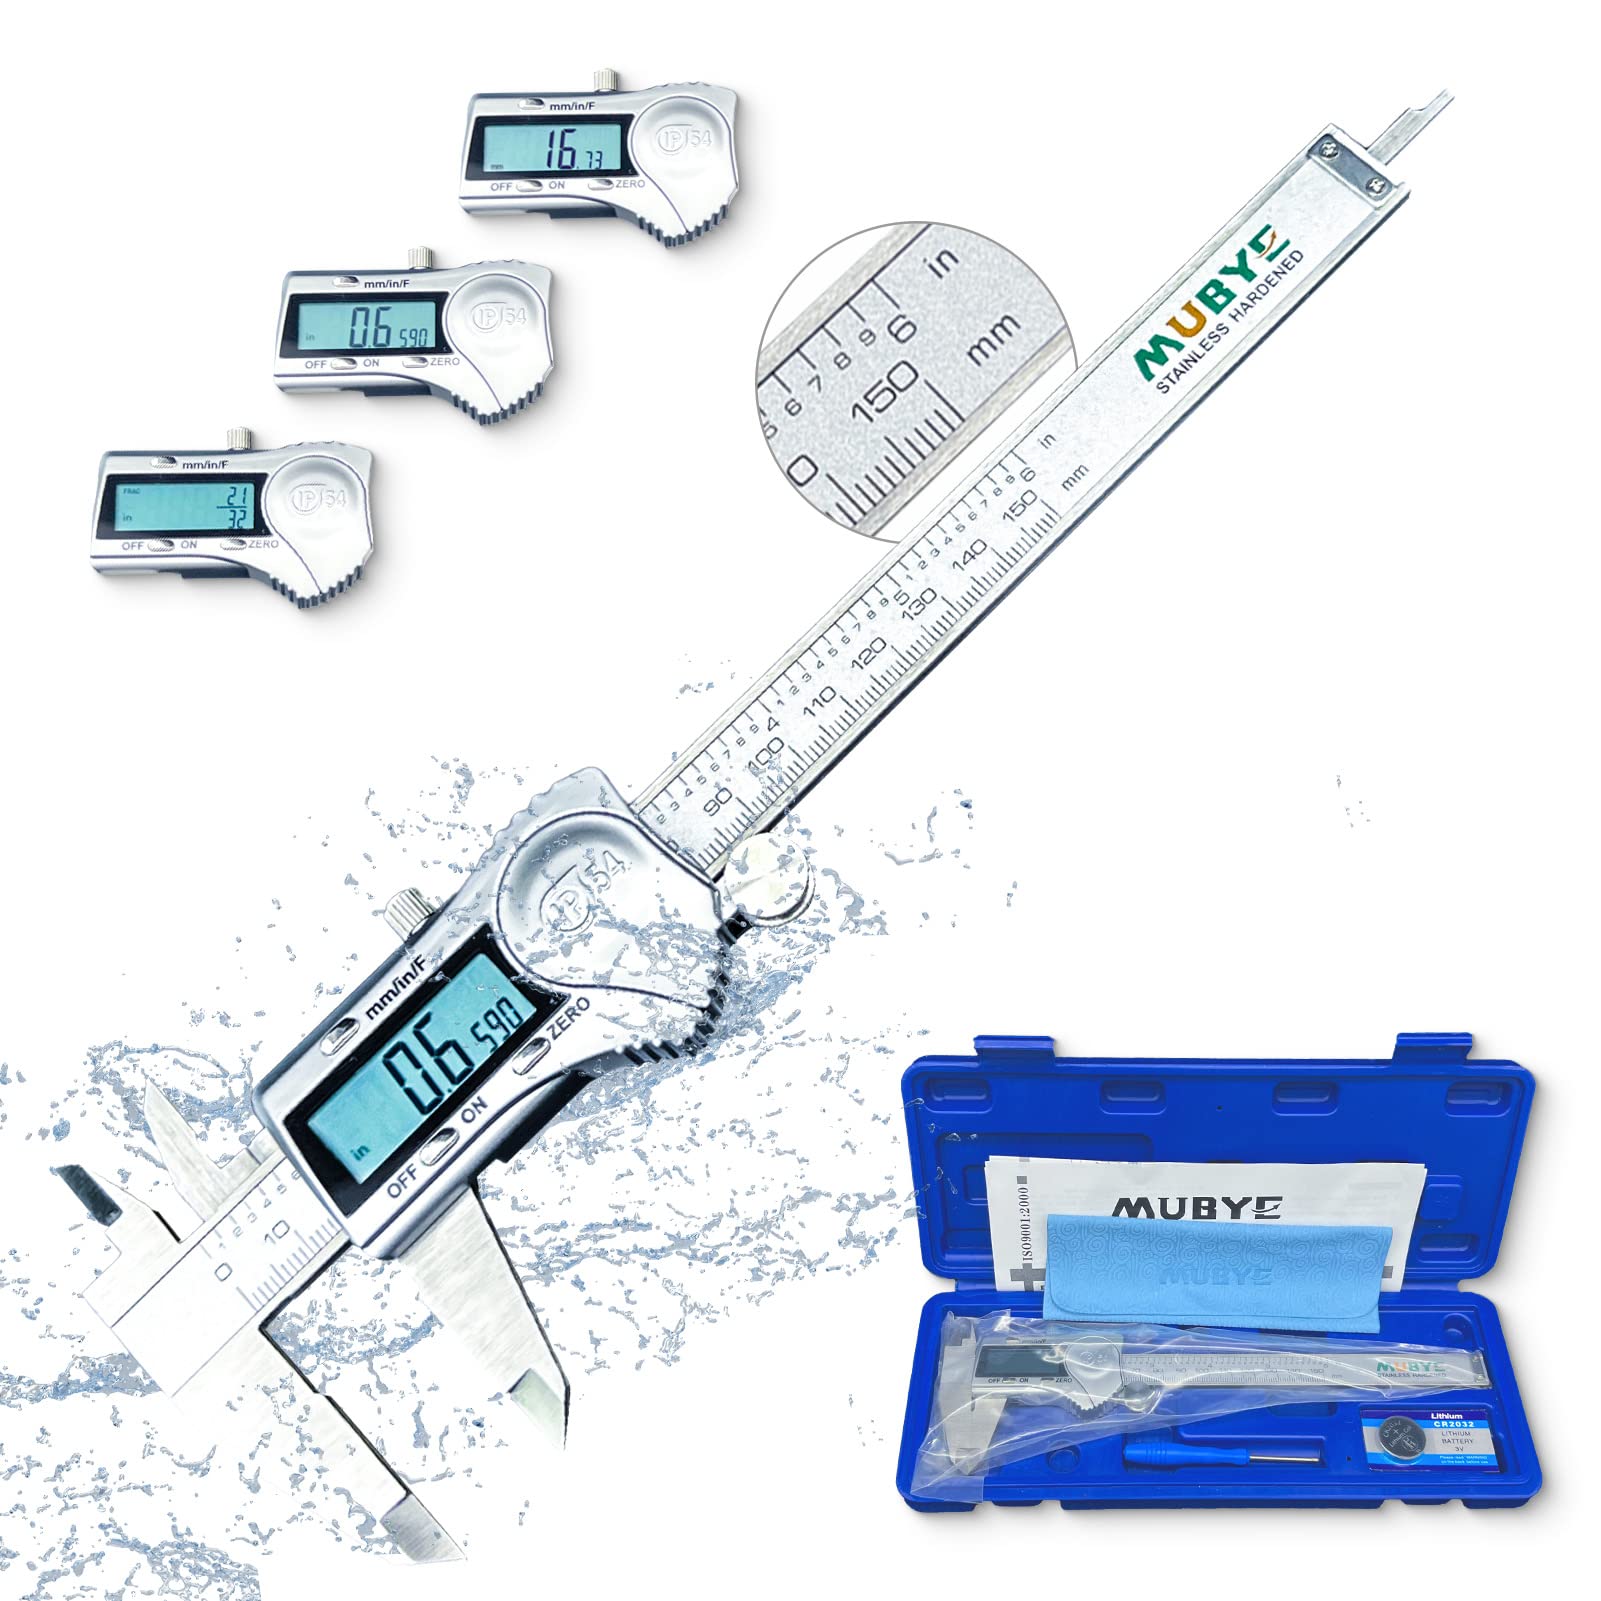 MUBYE Digital Caliper Micrometer Measuring Tool - 6 Inch 150Mm Stainless Steel Electronic Vernier Calipers, Ip54 Waterproof Protection